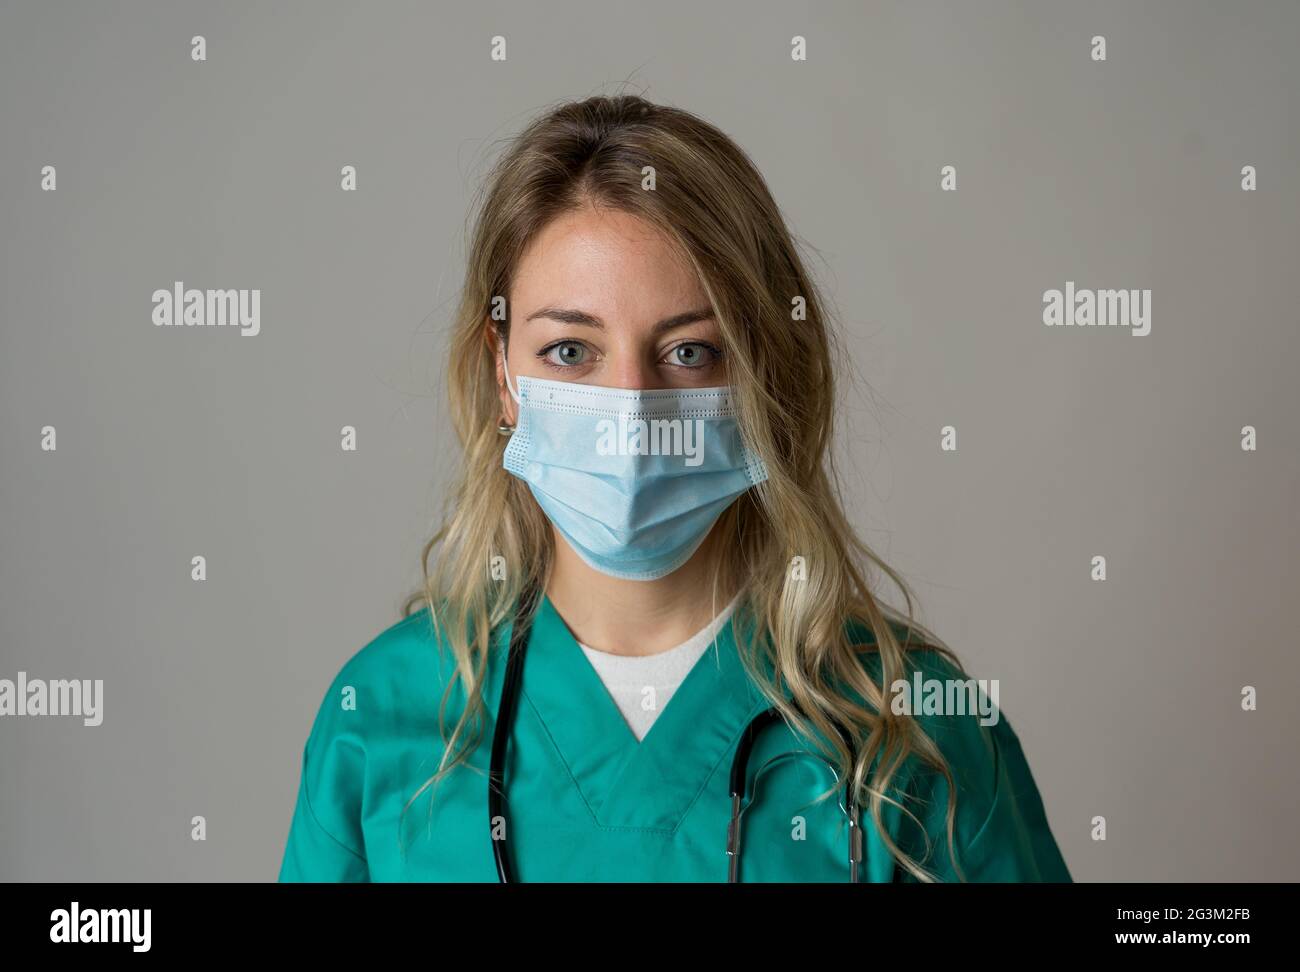 Porträt einer Ärztin oder Krankenschwester, die Peeling und eine medizinische Gesichtsmaske trägt. Emotionaler Stress durch überarbeiteter Gesundheitsfachkräfte und Ärzte Stockfoto